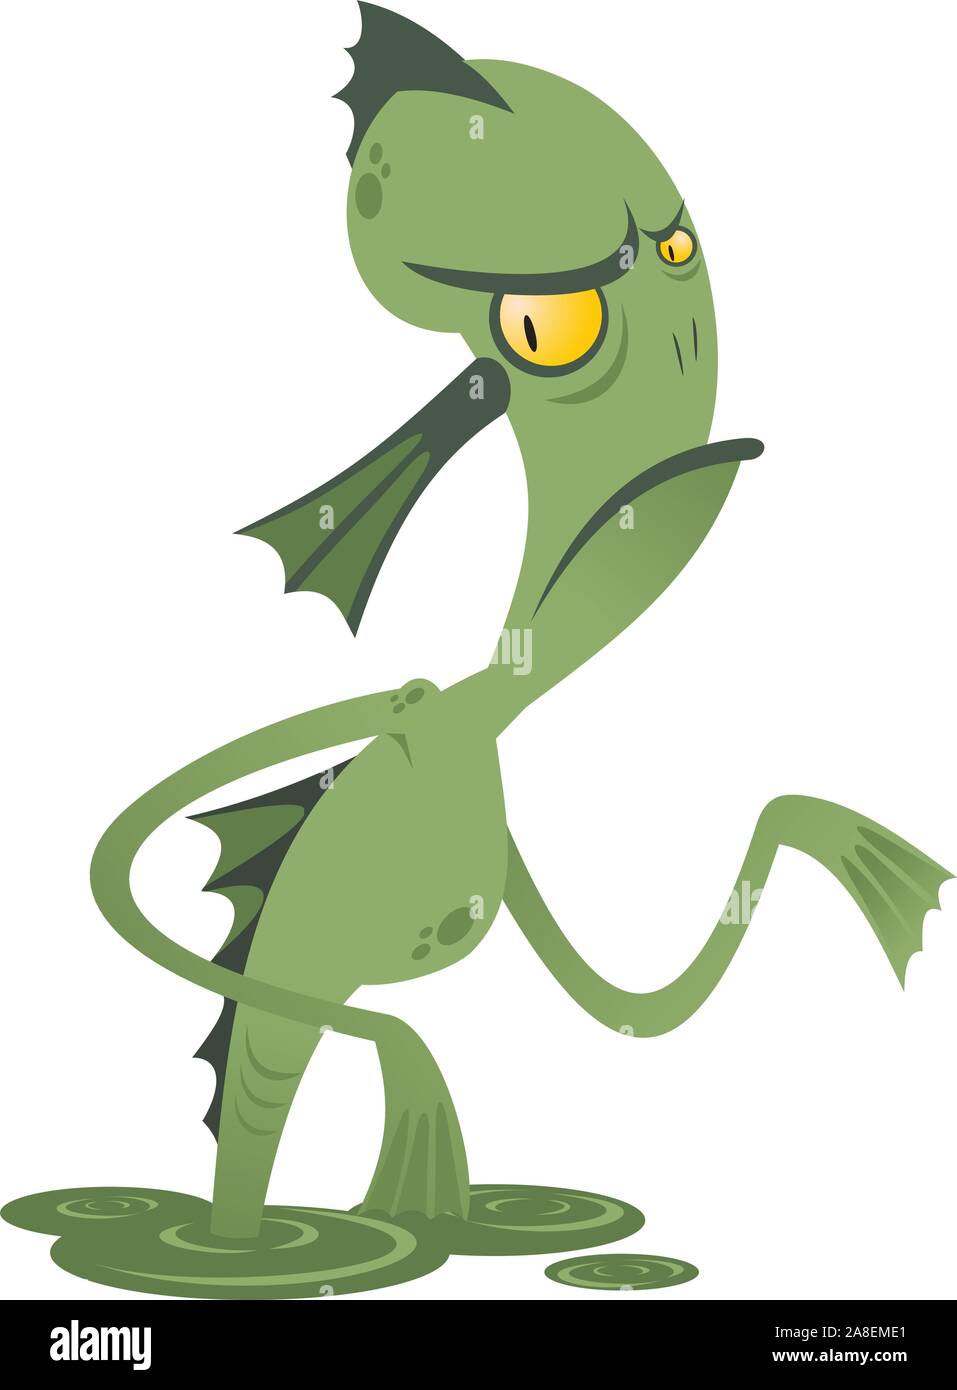 Swamp monster vector cartoon illustration Stock Vector